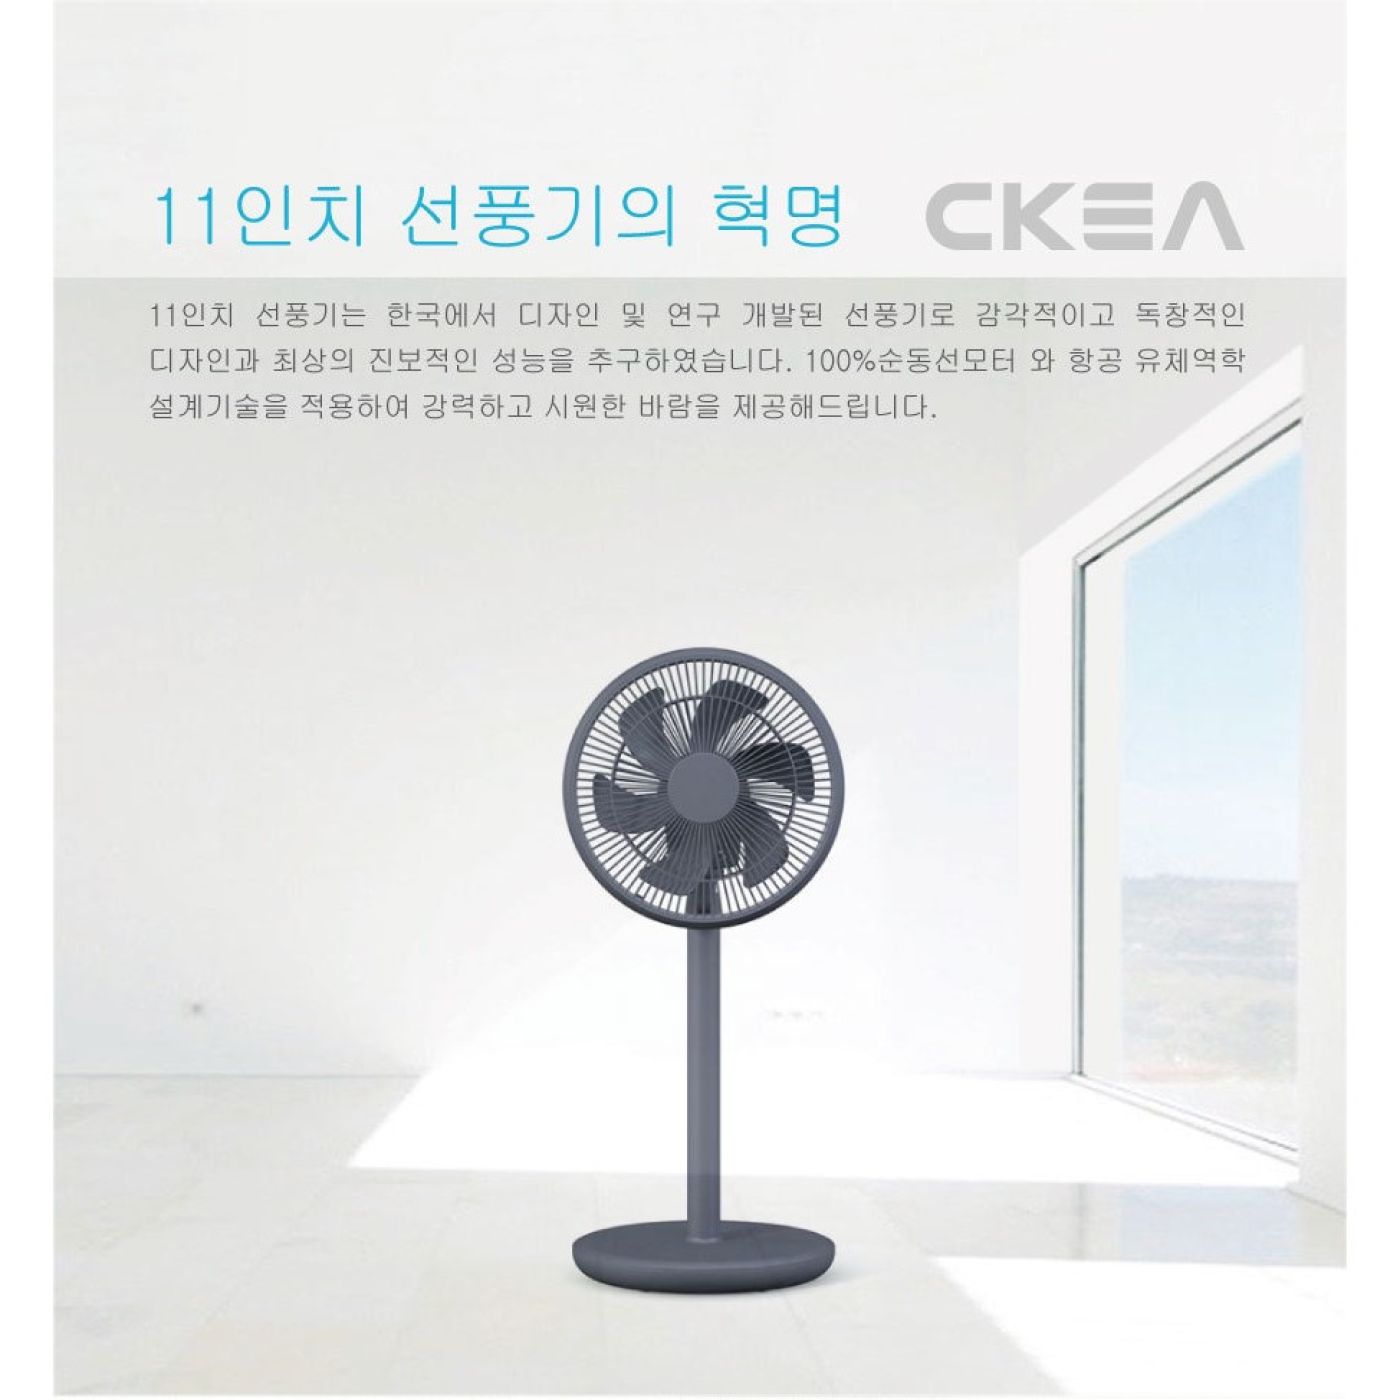 Quạt cây thông minh tiết kiệm điện phong cách Hàn Quốc CKEA (T534)